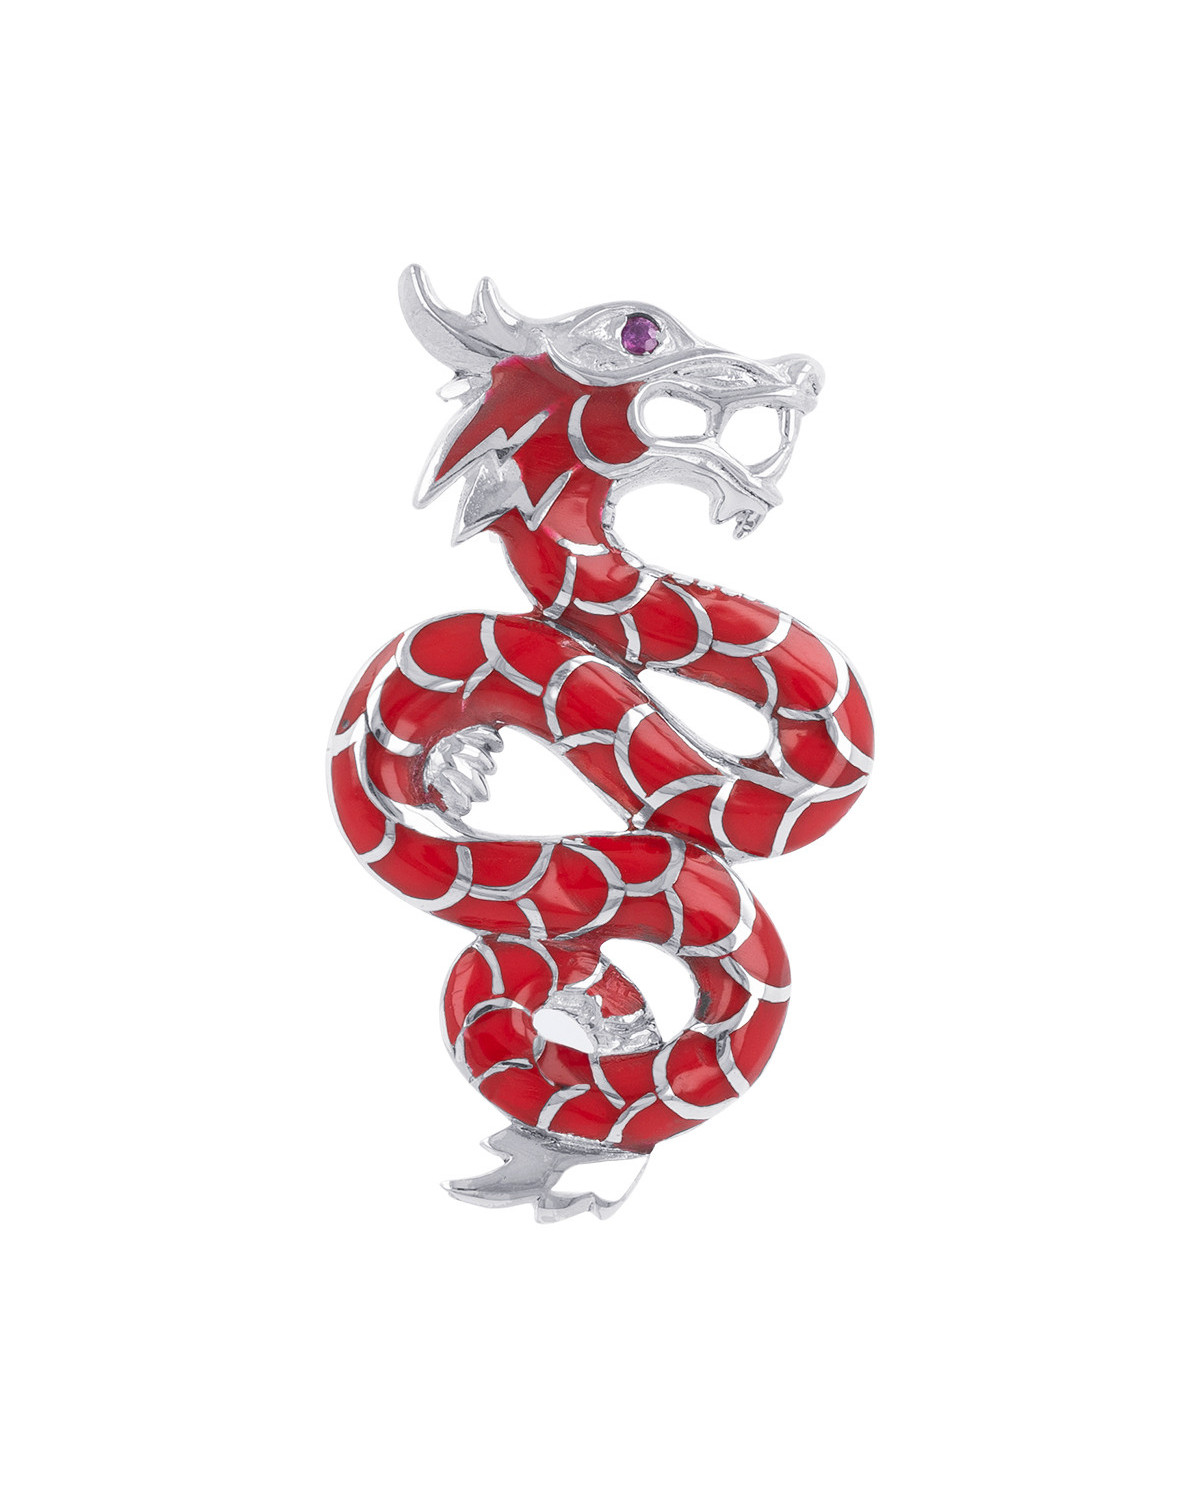 Pendentif dragon argent massif Corail Zirconium rouge chaîne serpent incluse